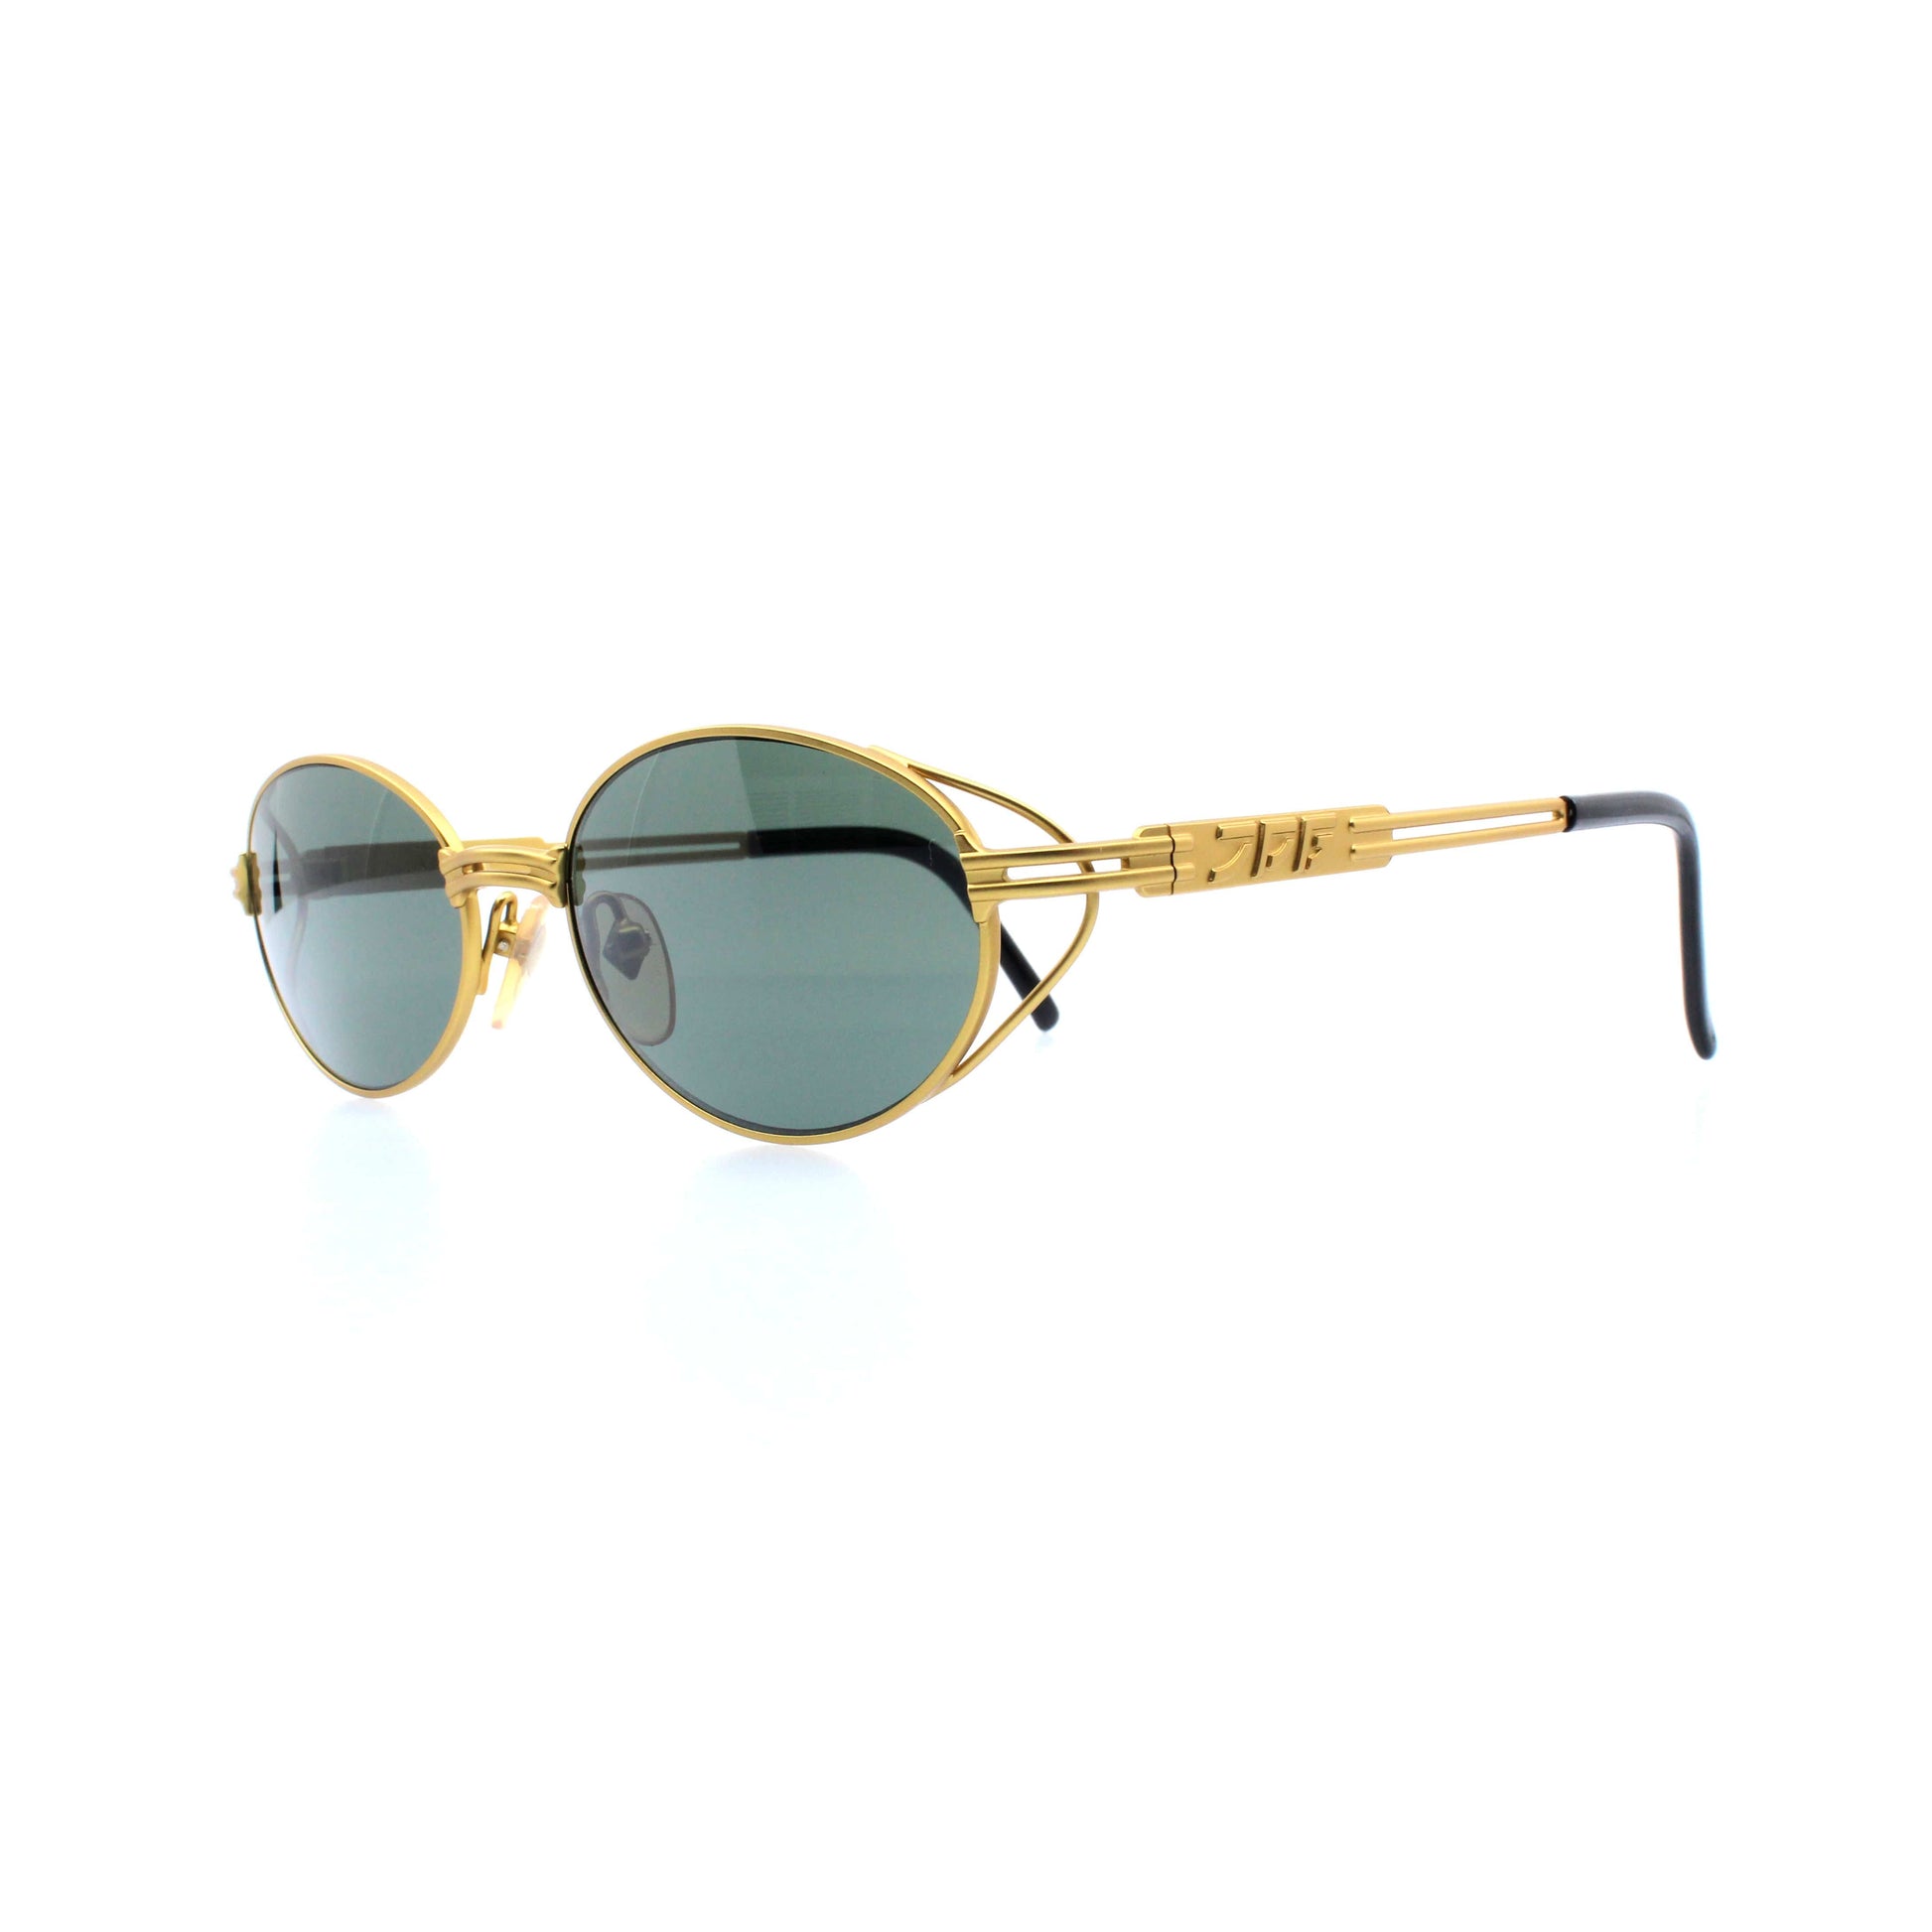 Gold Vintage Jean Paul Gaultier 58-6106 Sunglasses RSTKD Vintage